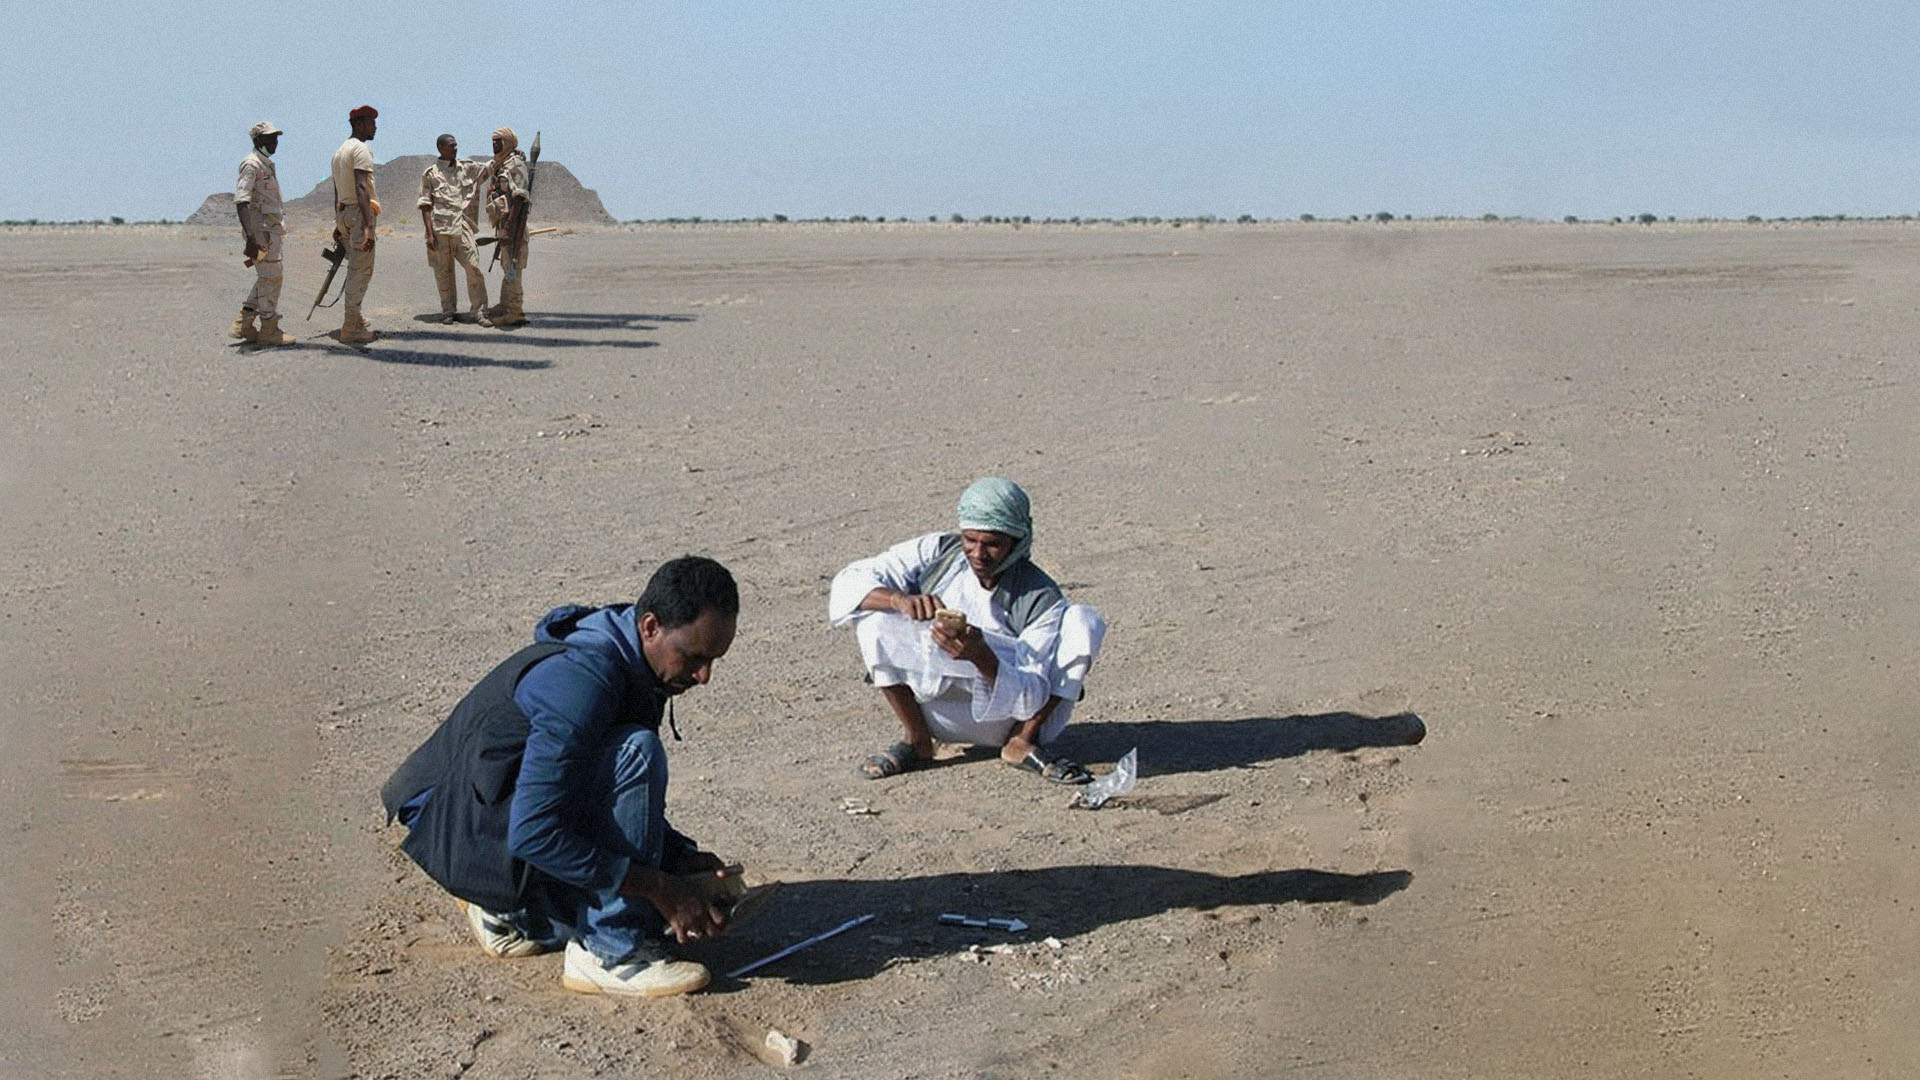 صورة السودان: جيولوجيون يكتشفون حفنة من تراب الصحراء لا يمتلكها الجيش وقوى التدخل السريع